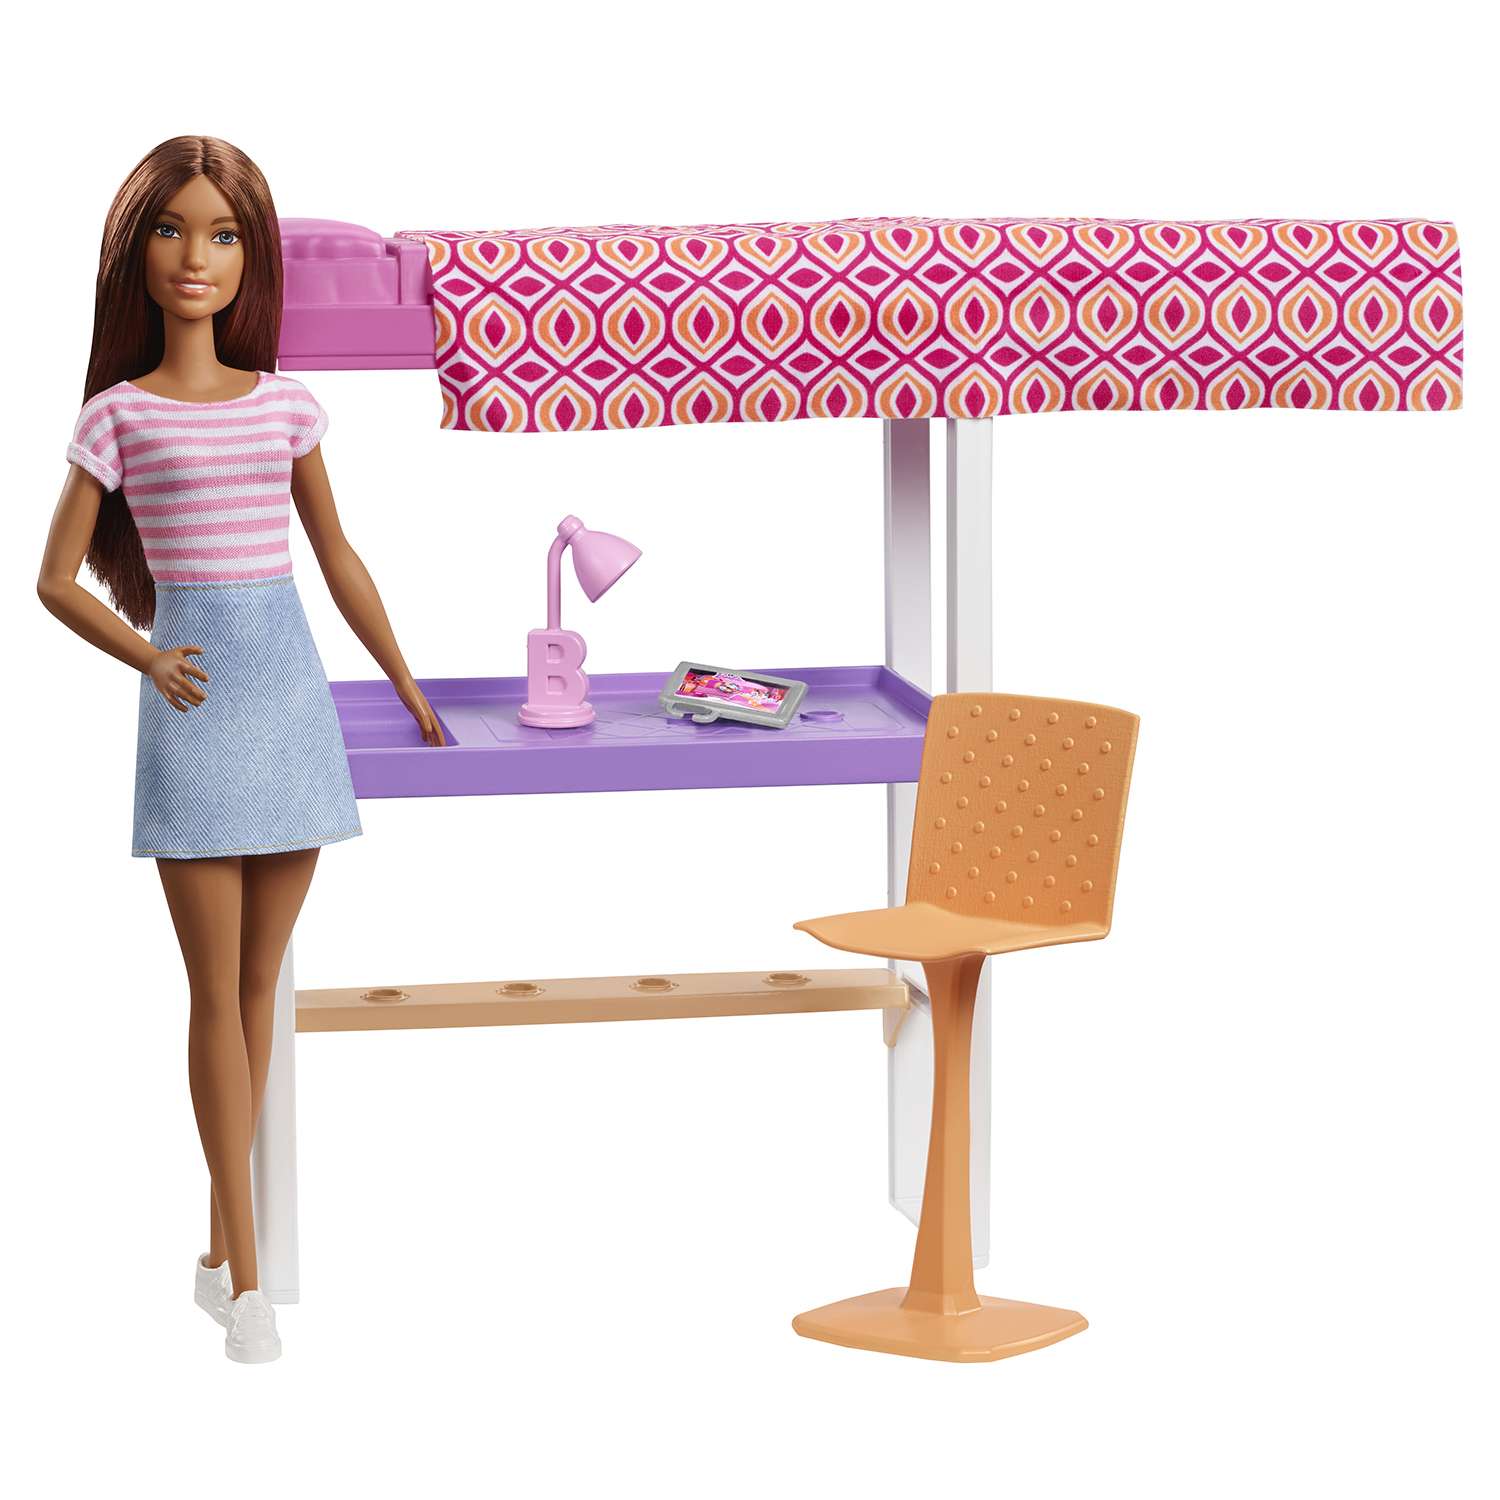 Игровой набор Barbie BRB Наборы мебели и кукла в ассортименте DVX51 - фото 13